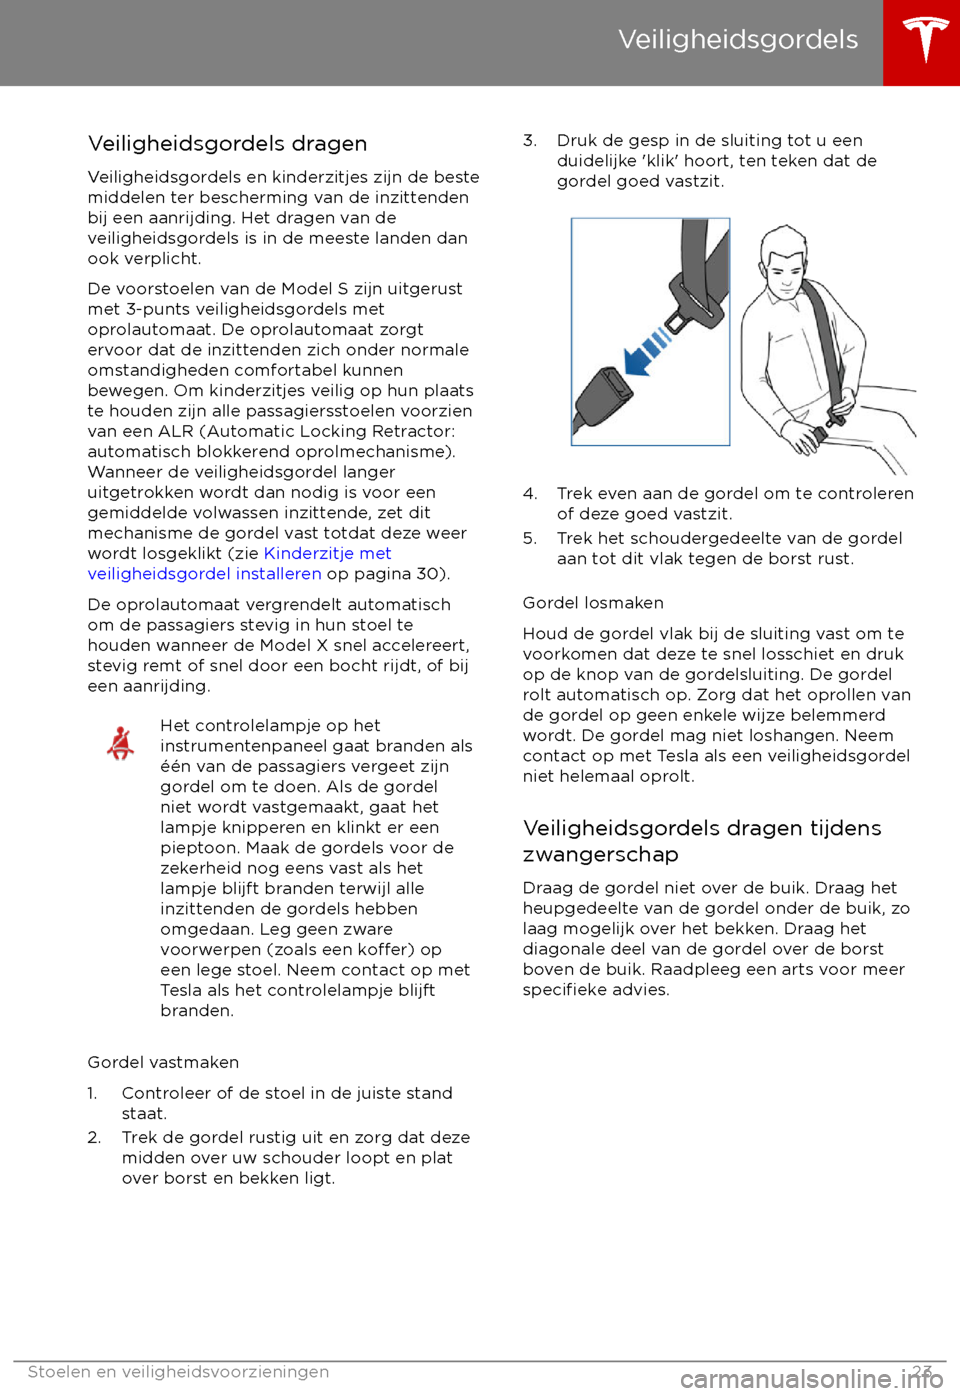 TESLA MODEL X 2017  Handleiding (in Dutch) Veiligheidsgordels dragenVeiligheidsgordels en kinderzitjes zijn de beste
middelen ter bescherming van de inzittenden
bij een aanrijding. Het dragen van de
veiligheidsgordels is in de meeste landen da